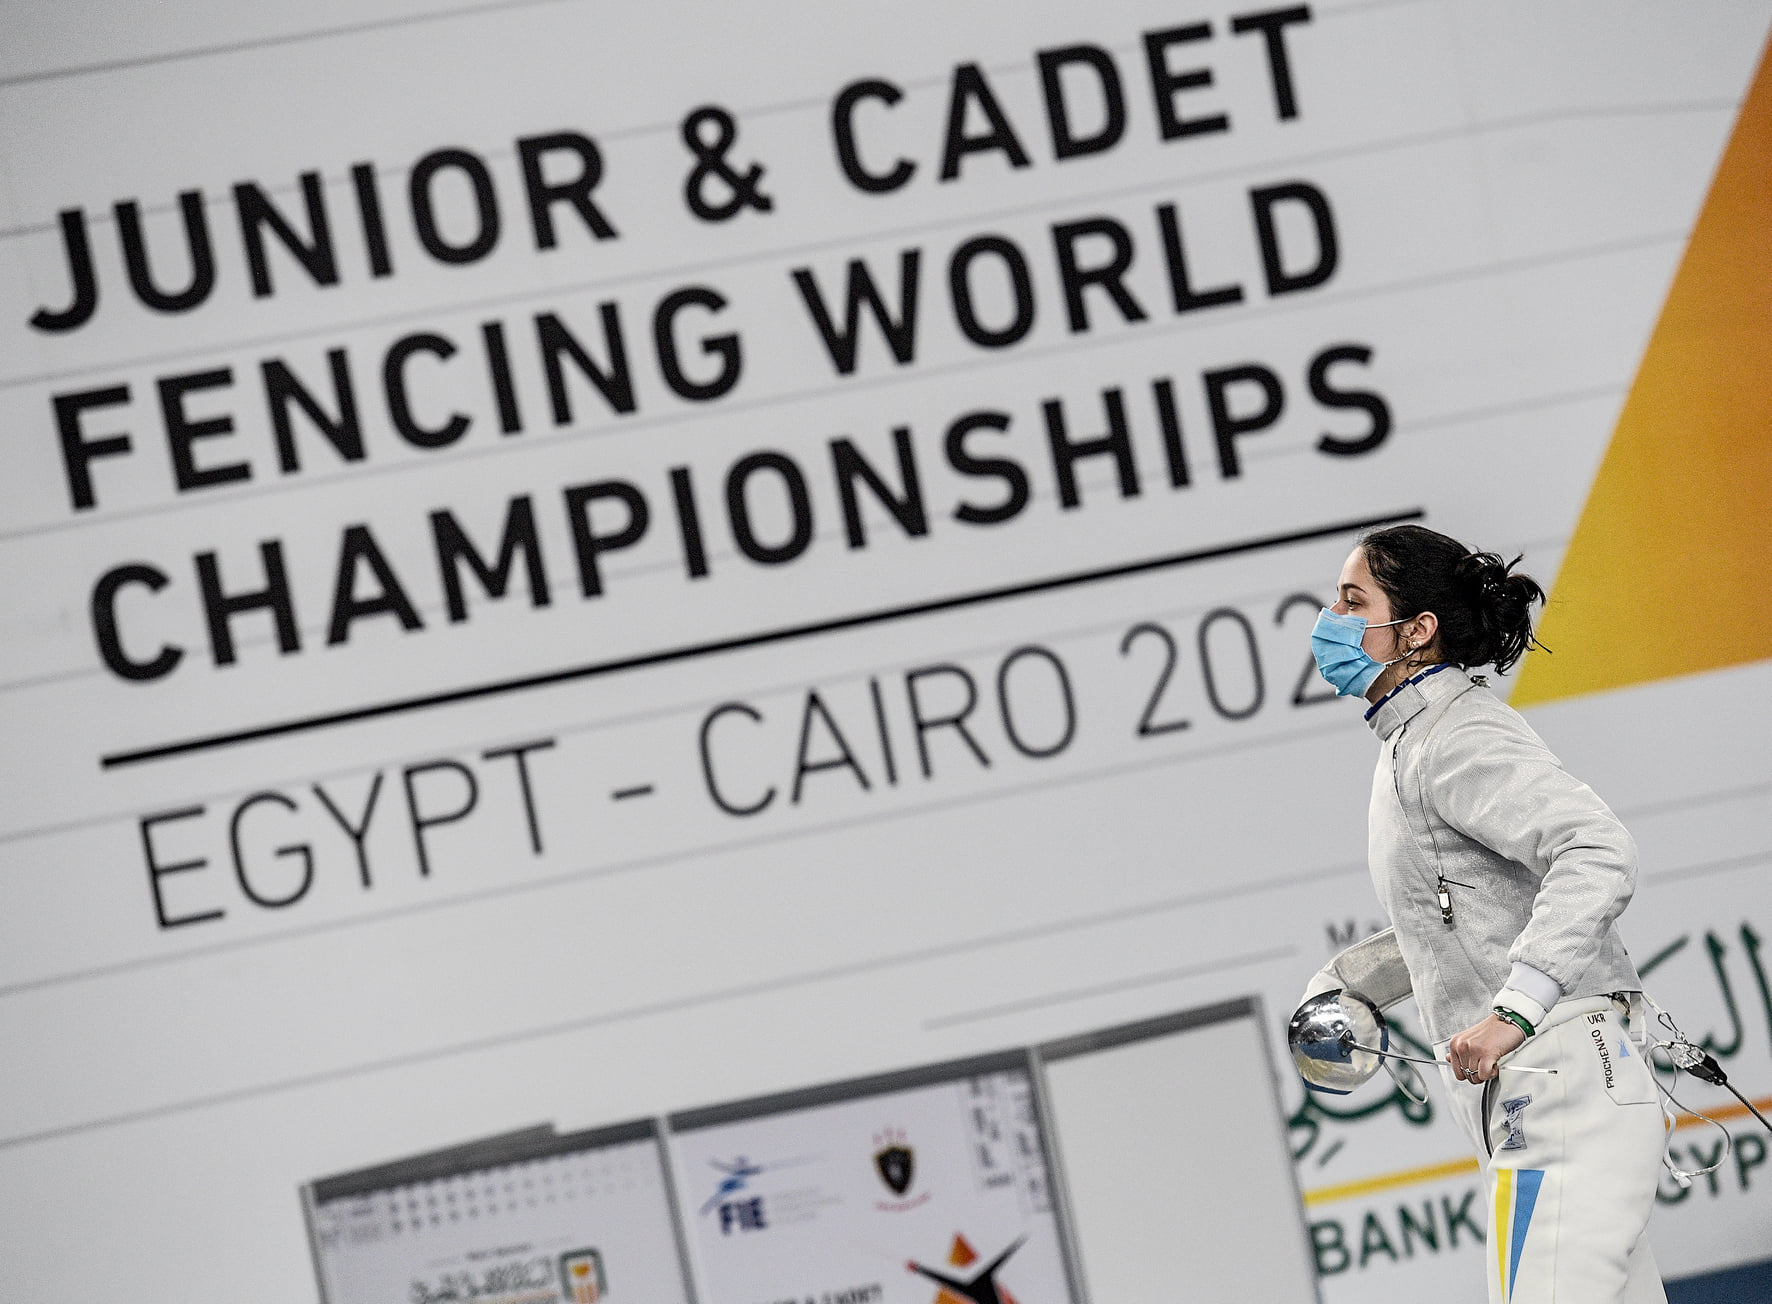 ЮЧС 2021 Каїр: Проченко приносить Україні першу медаль чемпіонату світу серед кадетів та юніорів